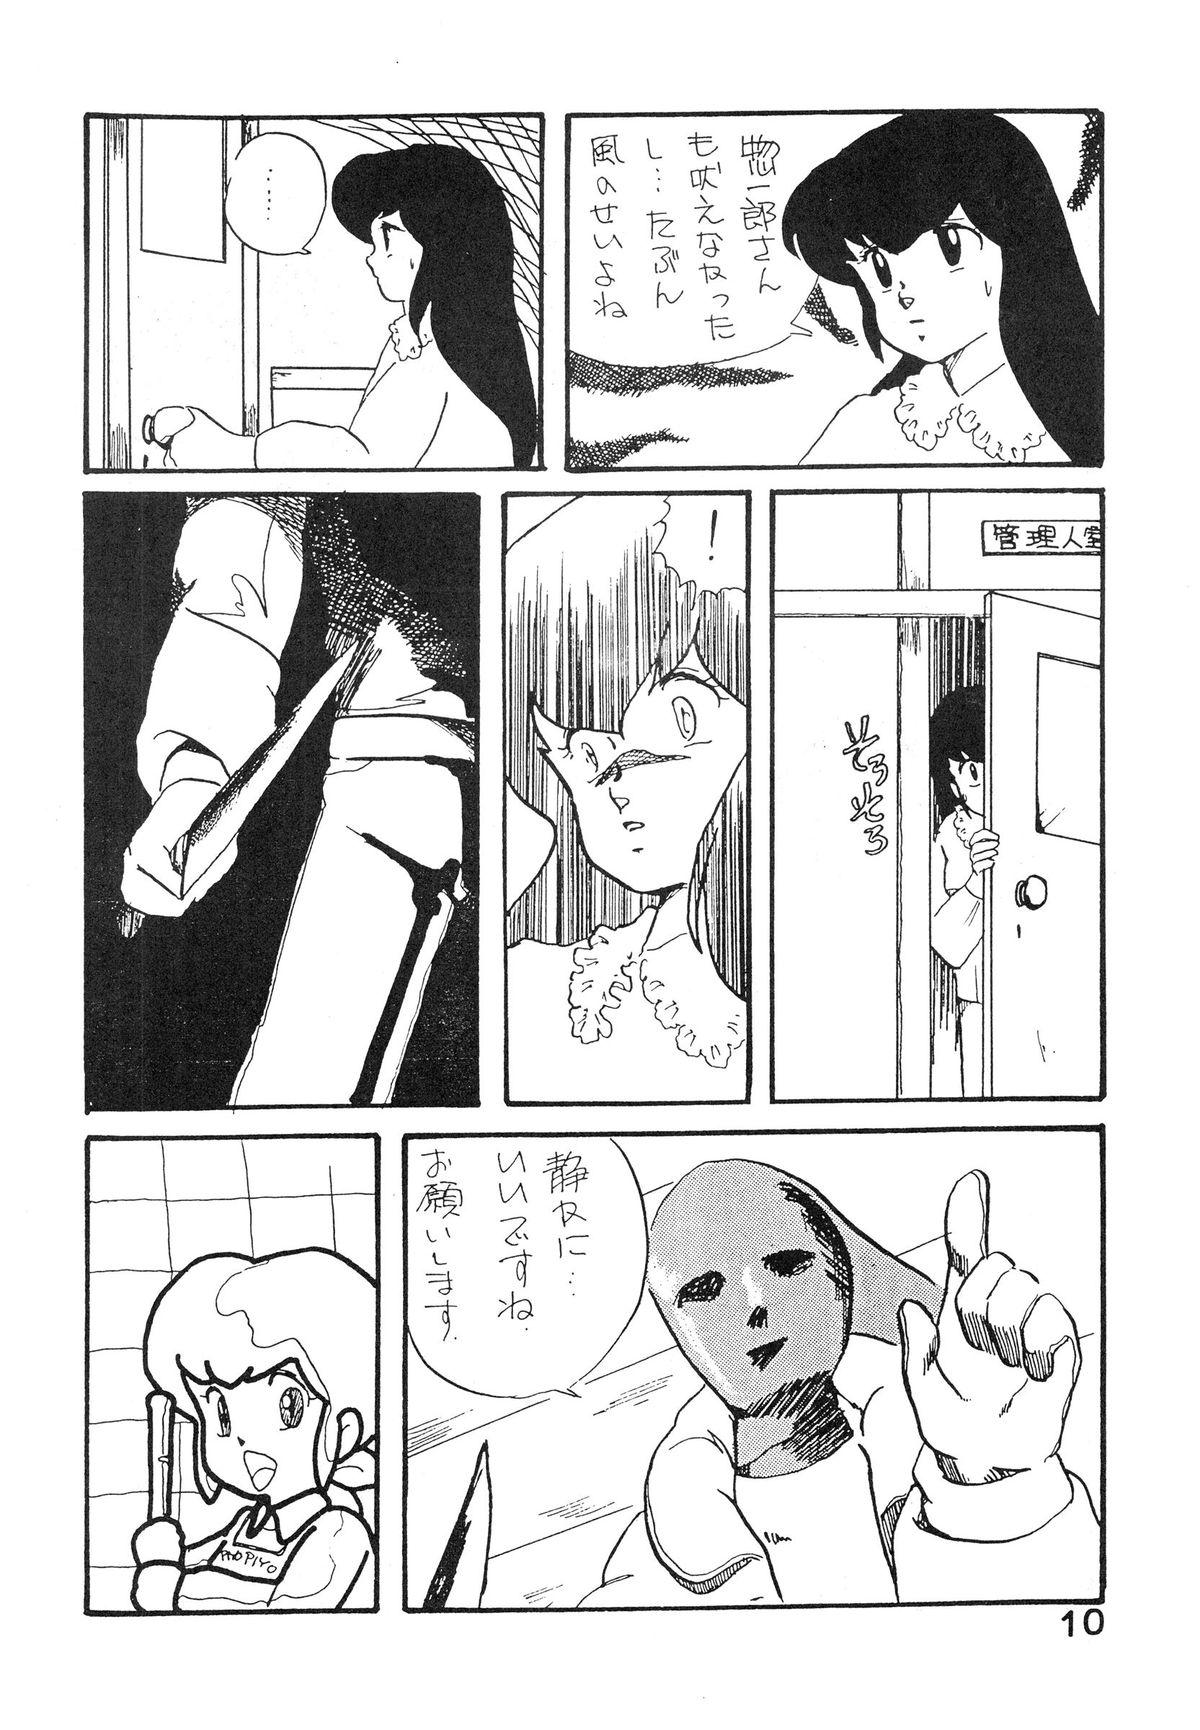 Sexo Natsuzuisen - Maison ikkoku Crazy - Page 10